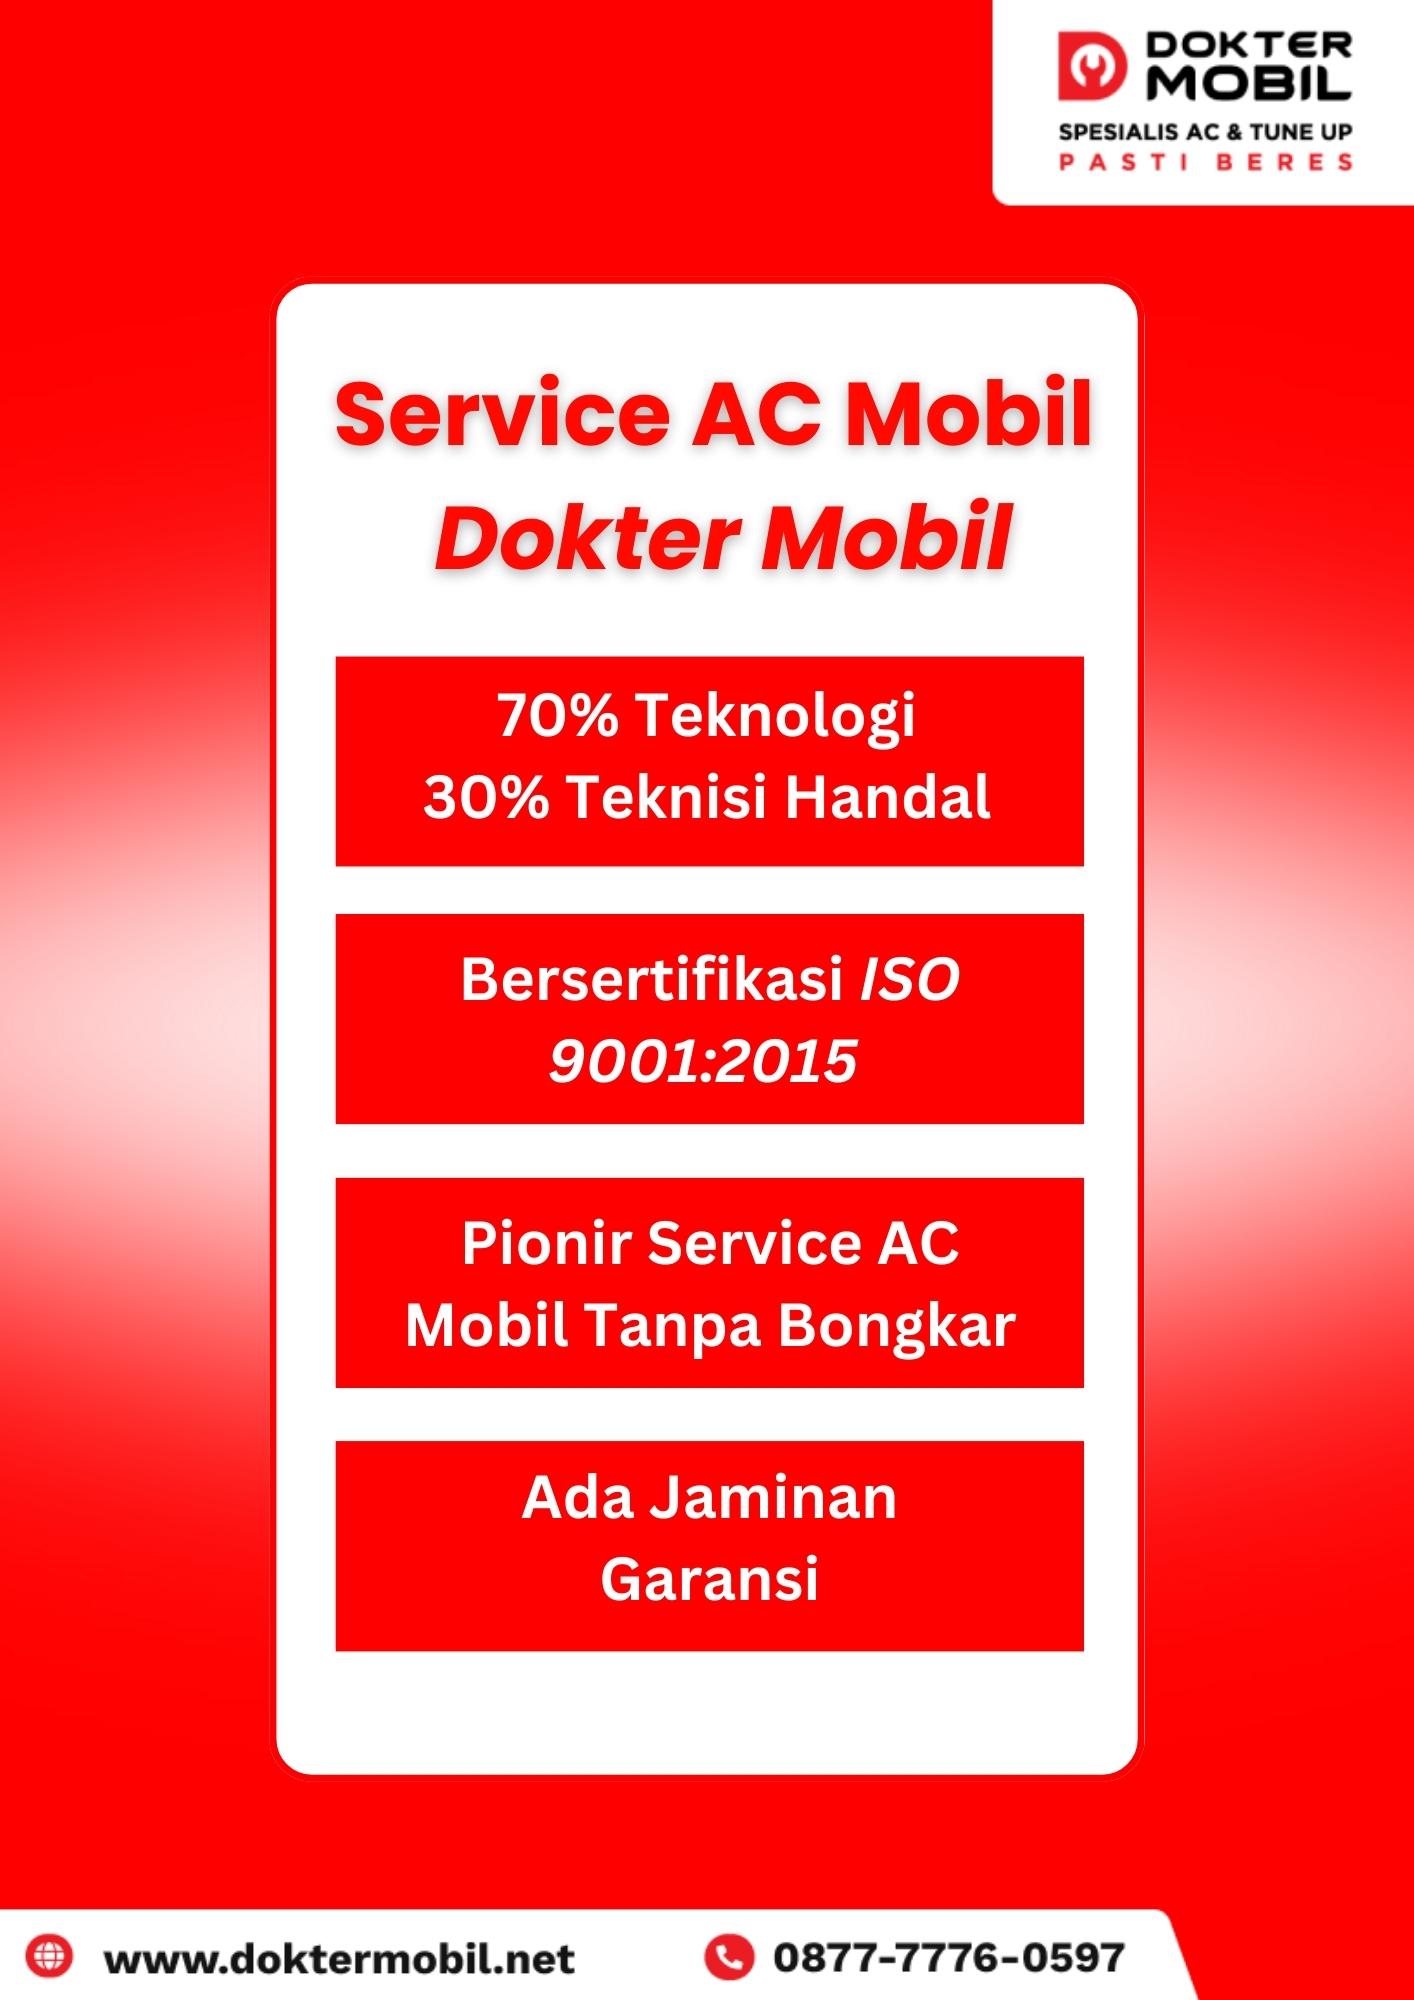 Keunggulan Service AC Mobil di Dokter Mobil - doktermobil.net